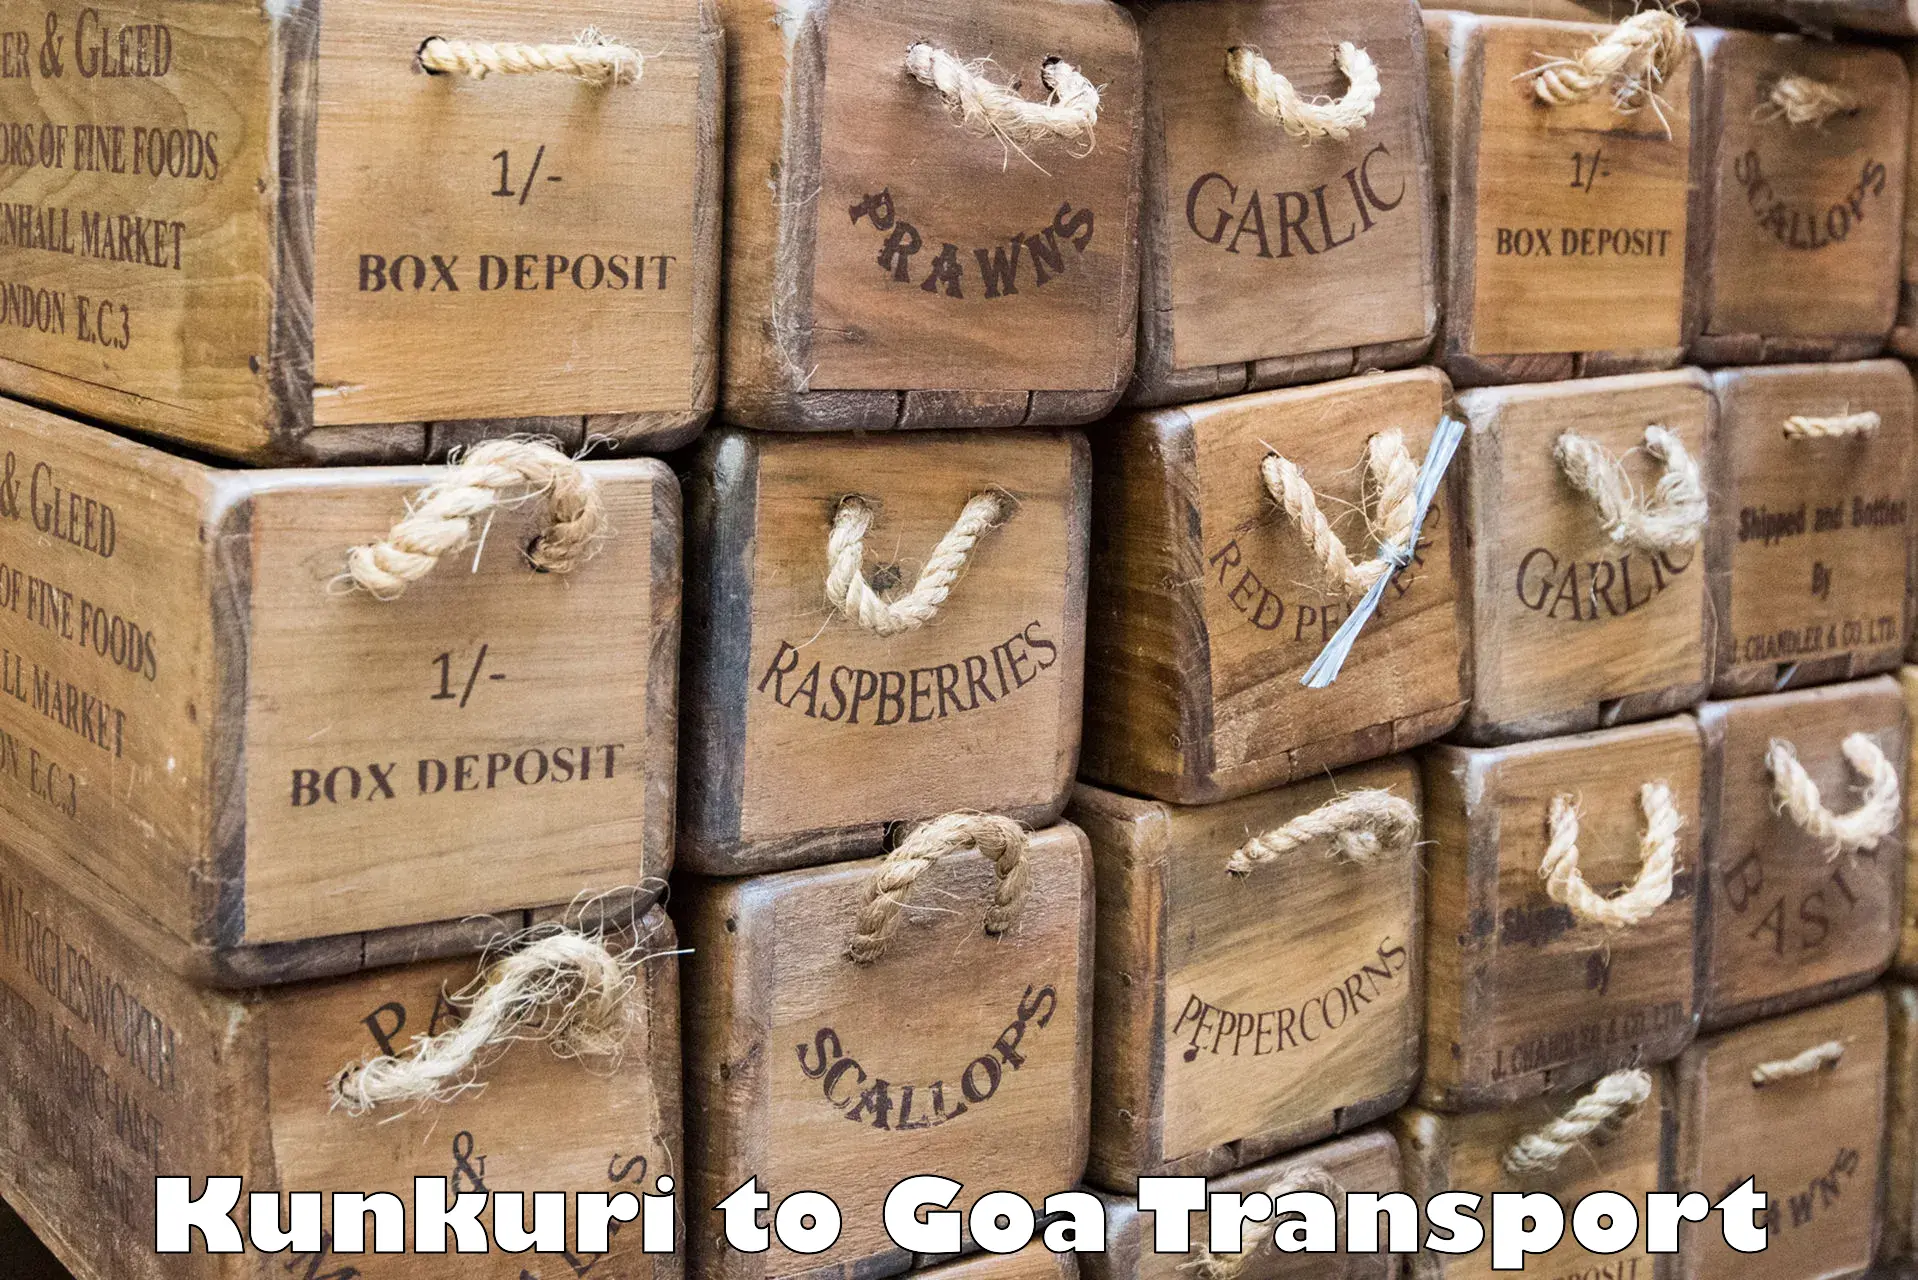 Transport shared services Kunkuri to Vasco da Gama